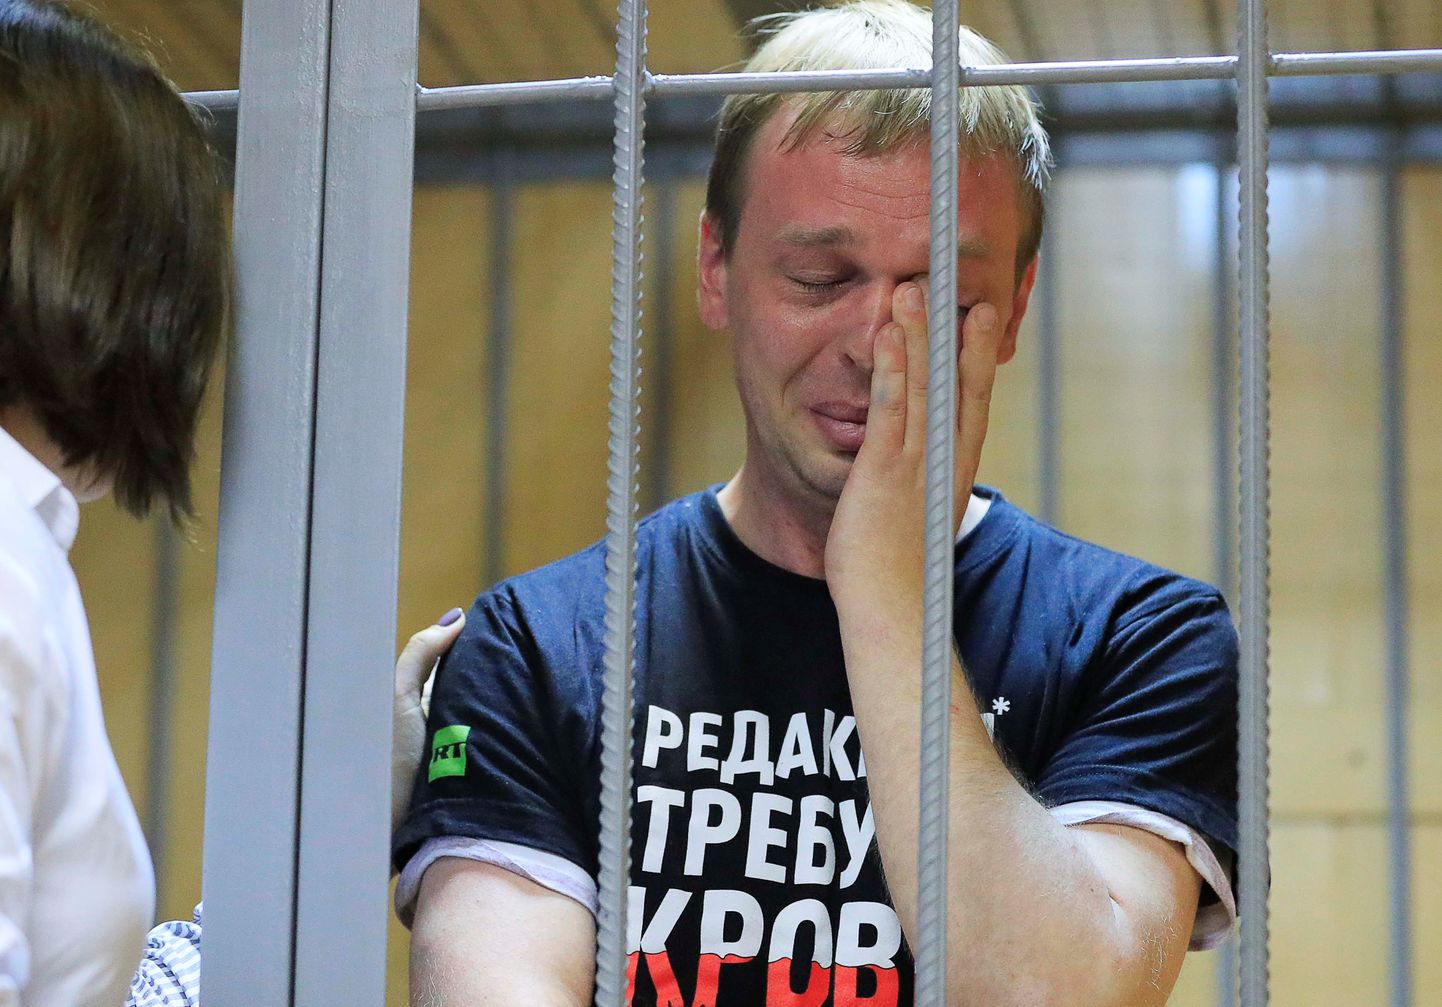  Krievijā aizturētais "Meduza" žurnālists Ivans Golunovs